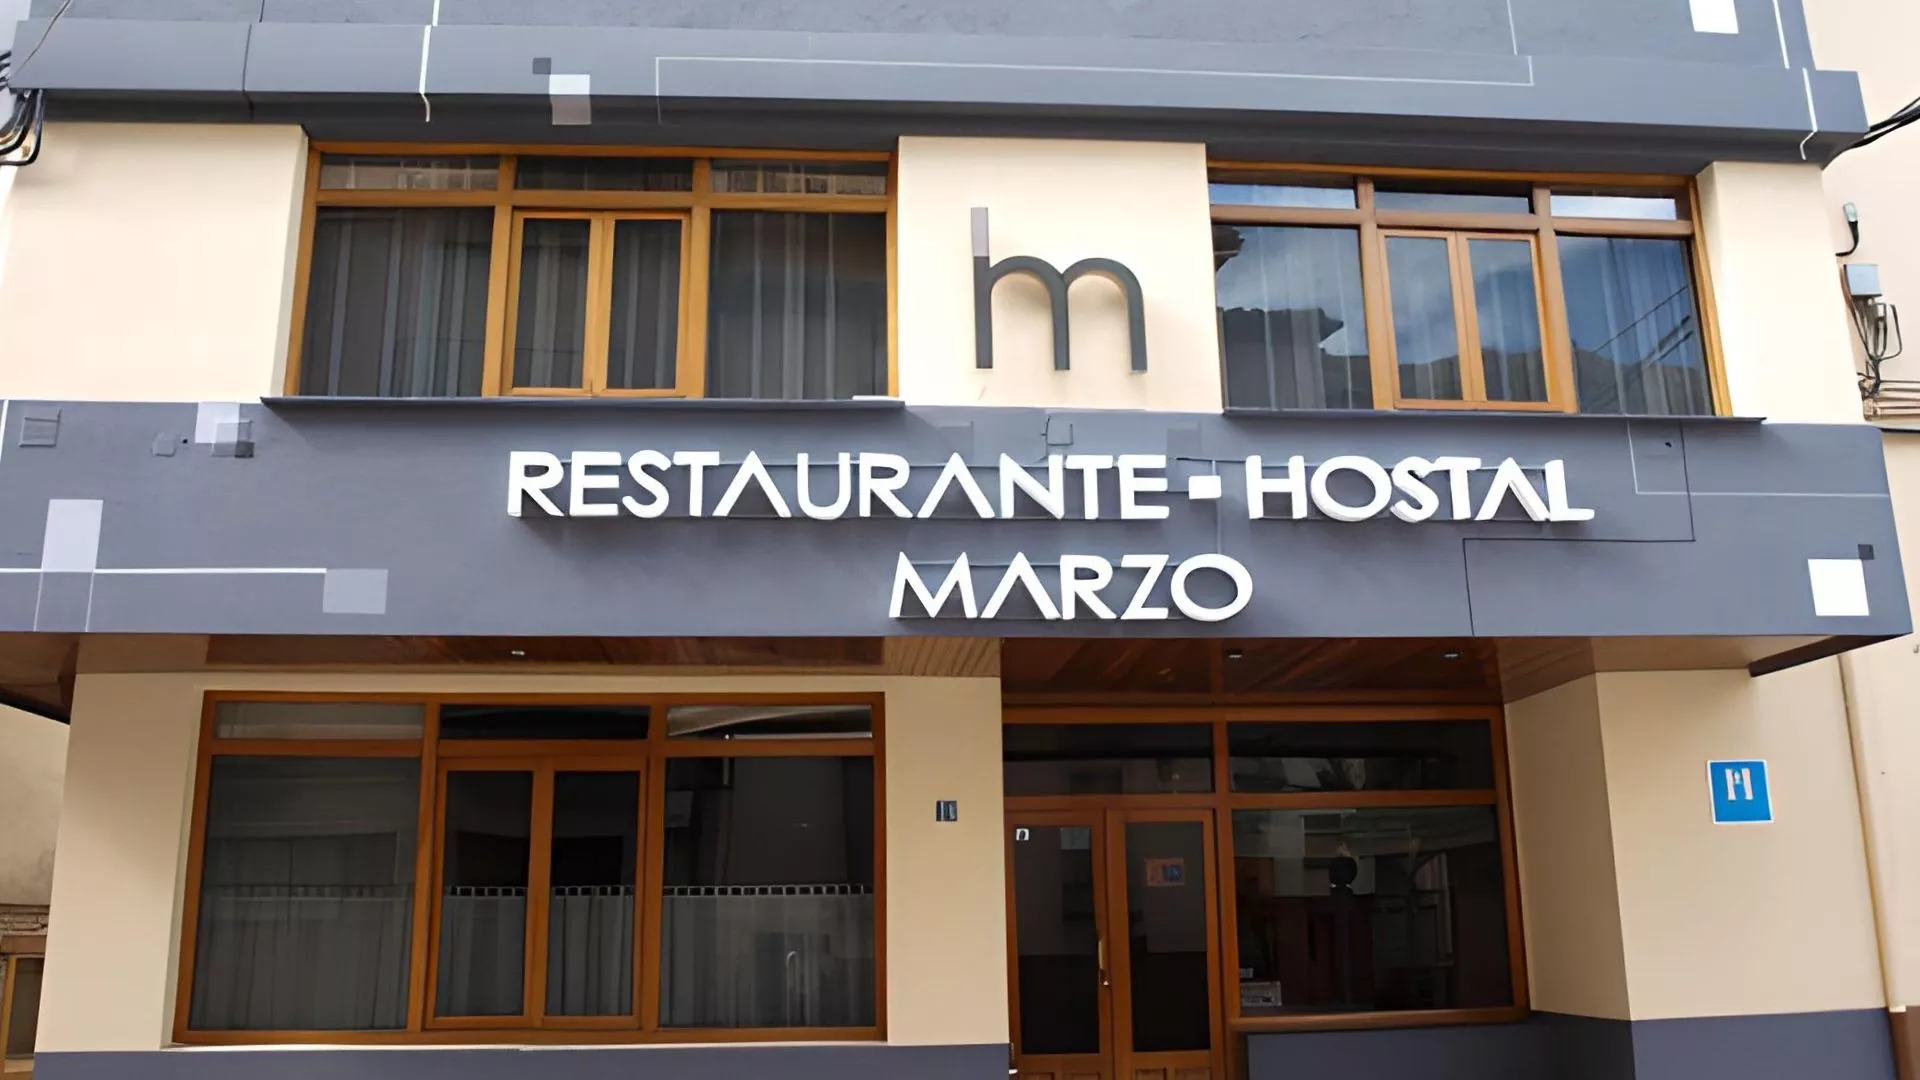 Foto Hostal restaurante Marzo Historia Actualidad